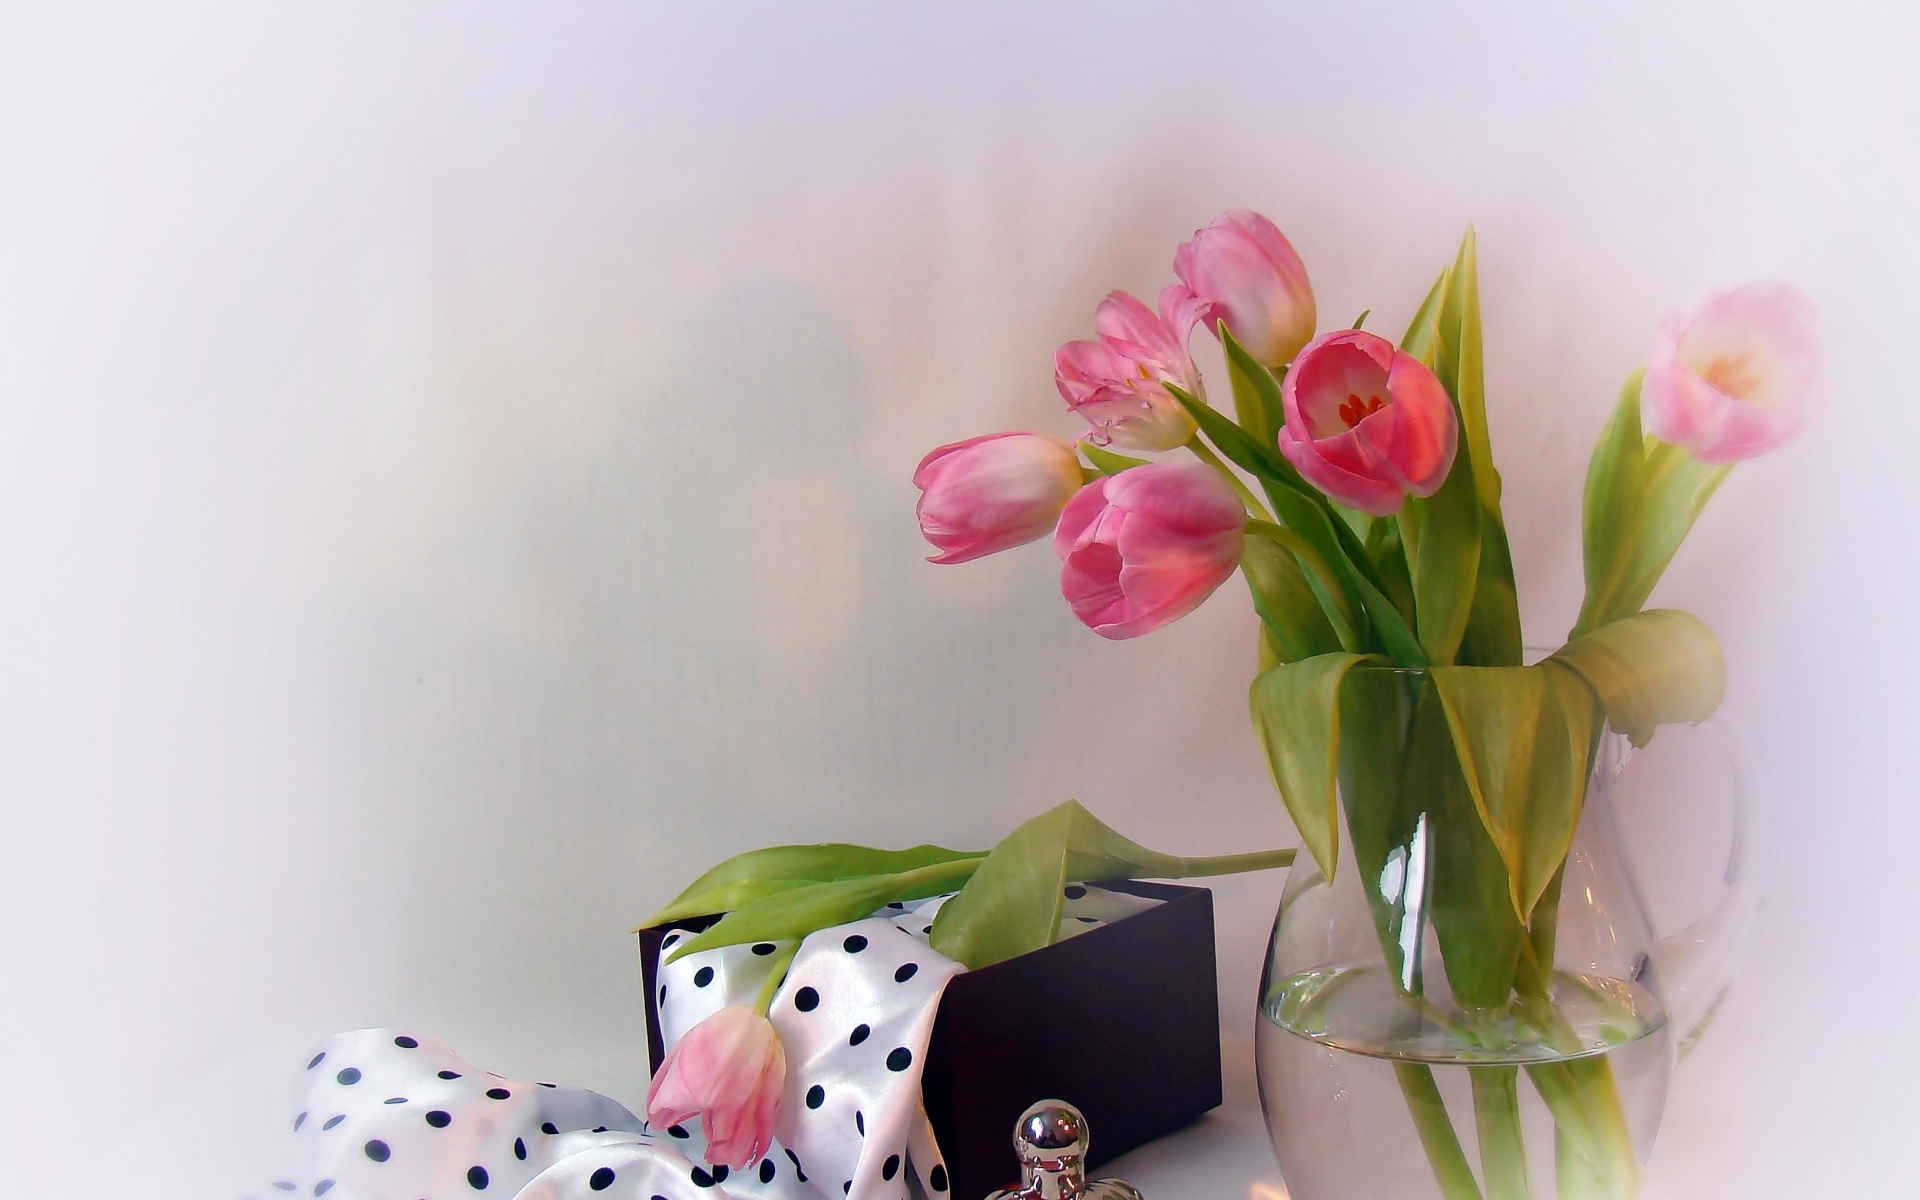 Картинки Тюльпаны, цветы, кувшин, парфюмерия, шарфы, ящик фото и обои на рабочий стол